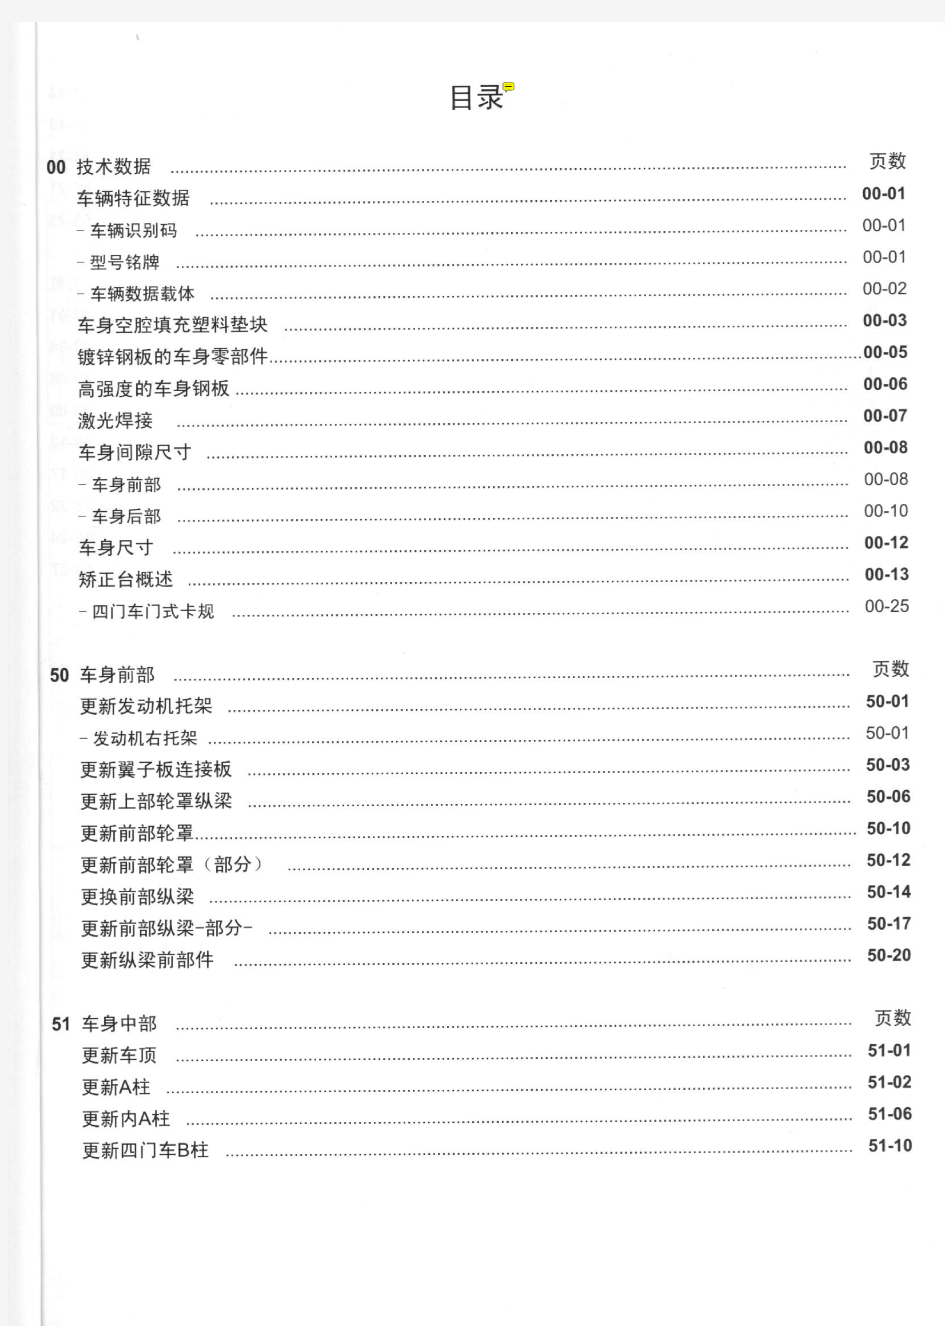 上海大众polo维修手册(车身)